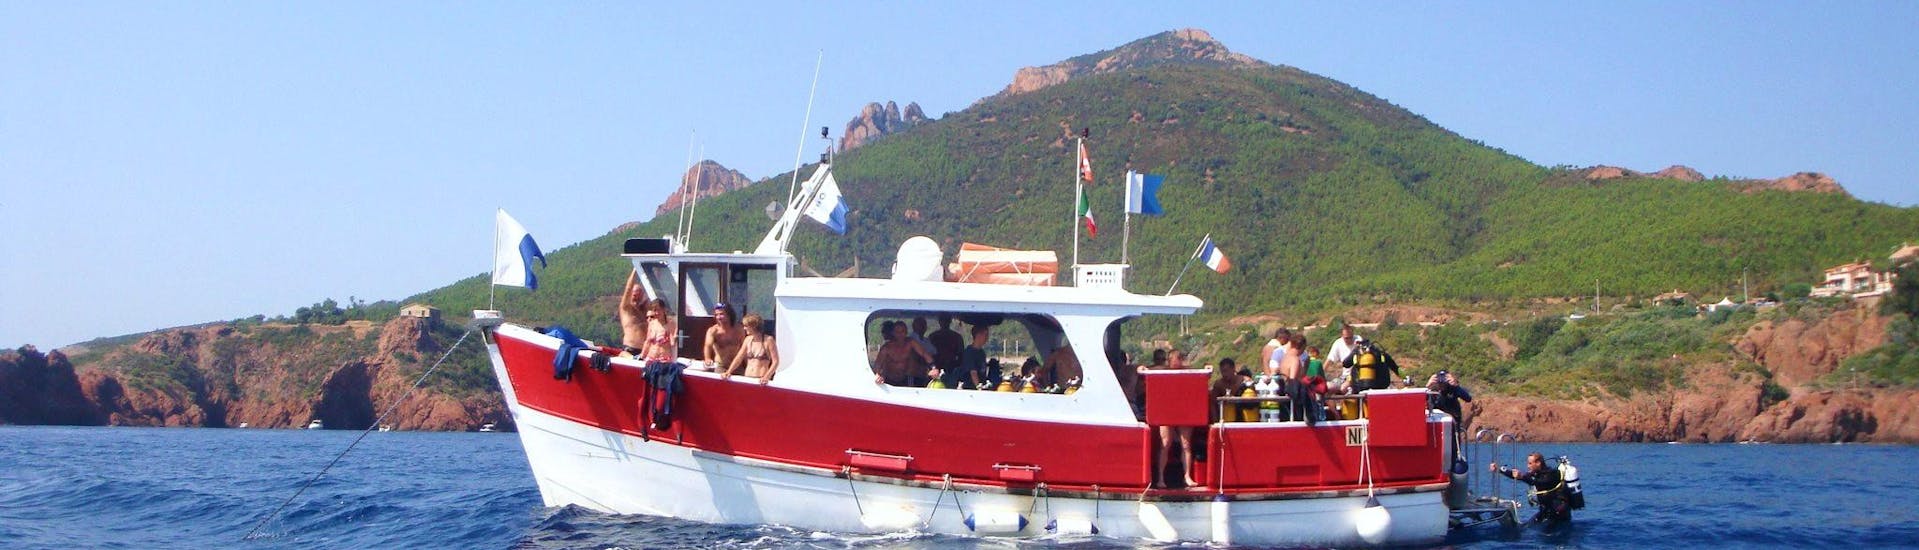 Vue du bateau du Centre de plongée de La Rague devant le massif de l'Estérel utilisé pendant la Sortie snorkeling près de Cannes.